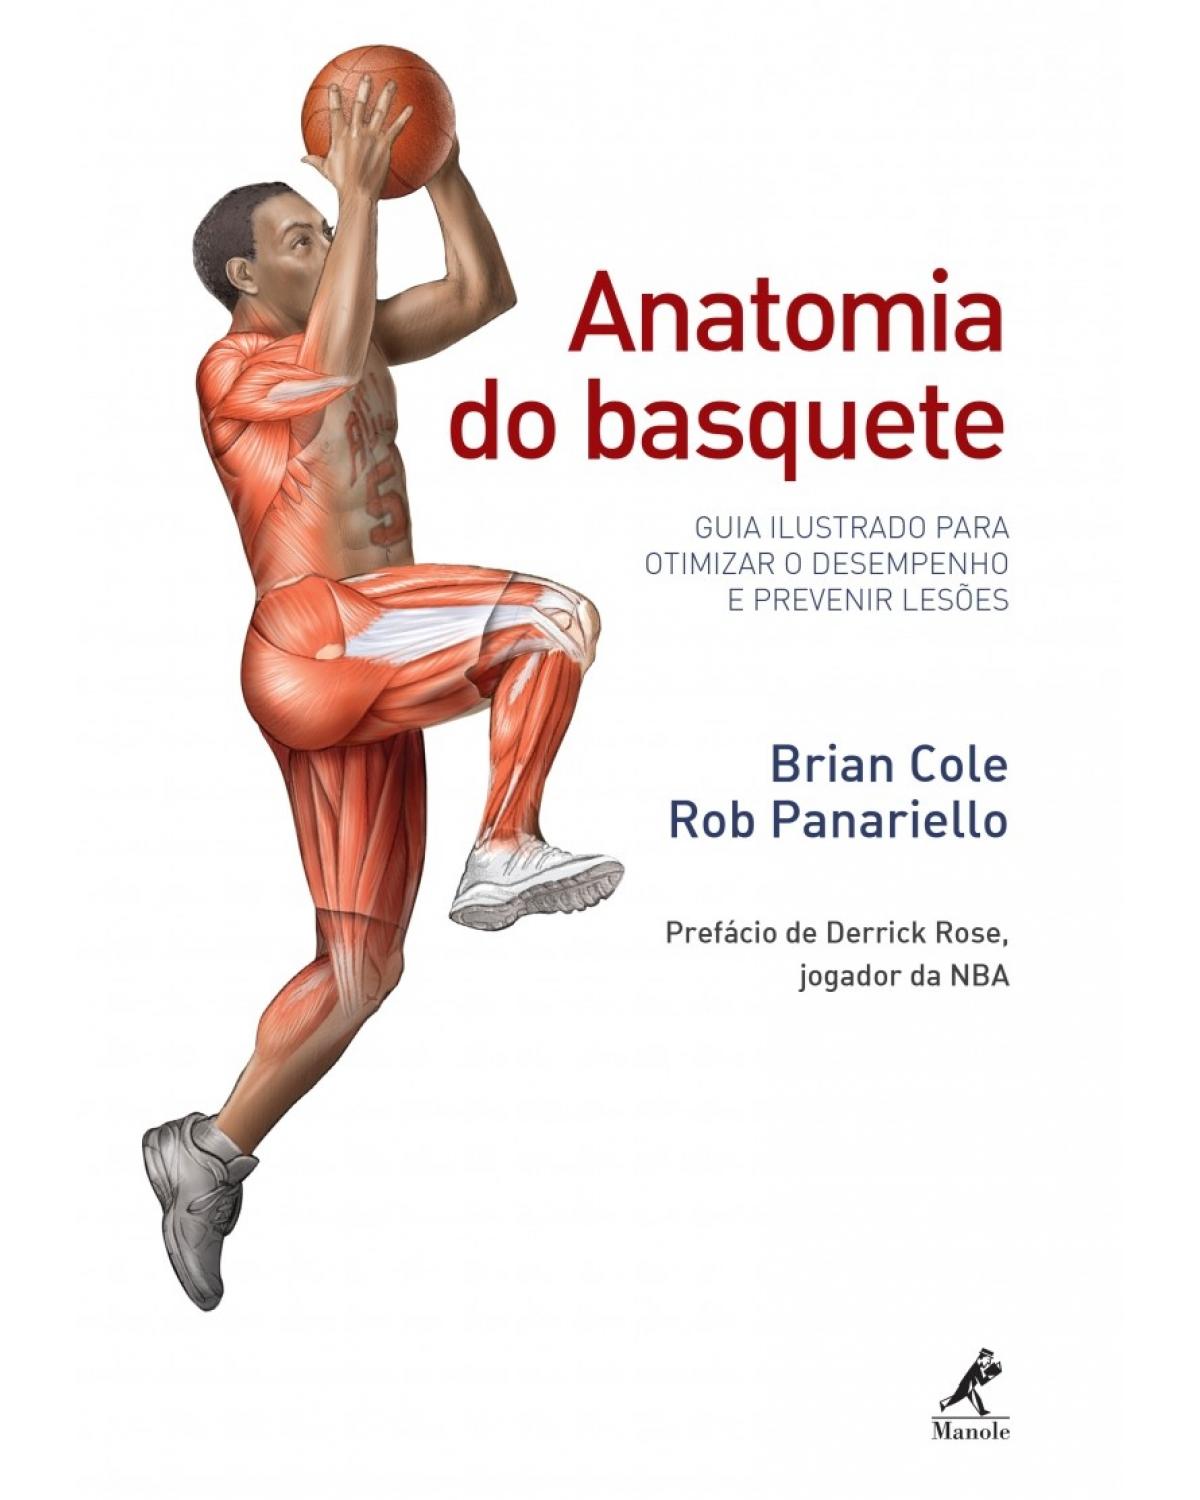 Anatomia do basquete - Guia ilustrado para otimizar o desempenho e prevenir lesões - 1ª Edição | 2017